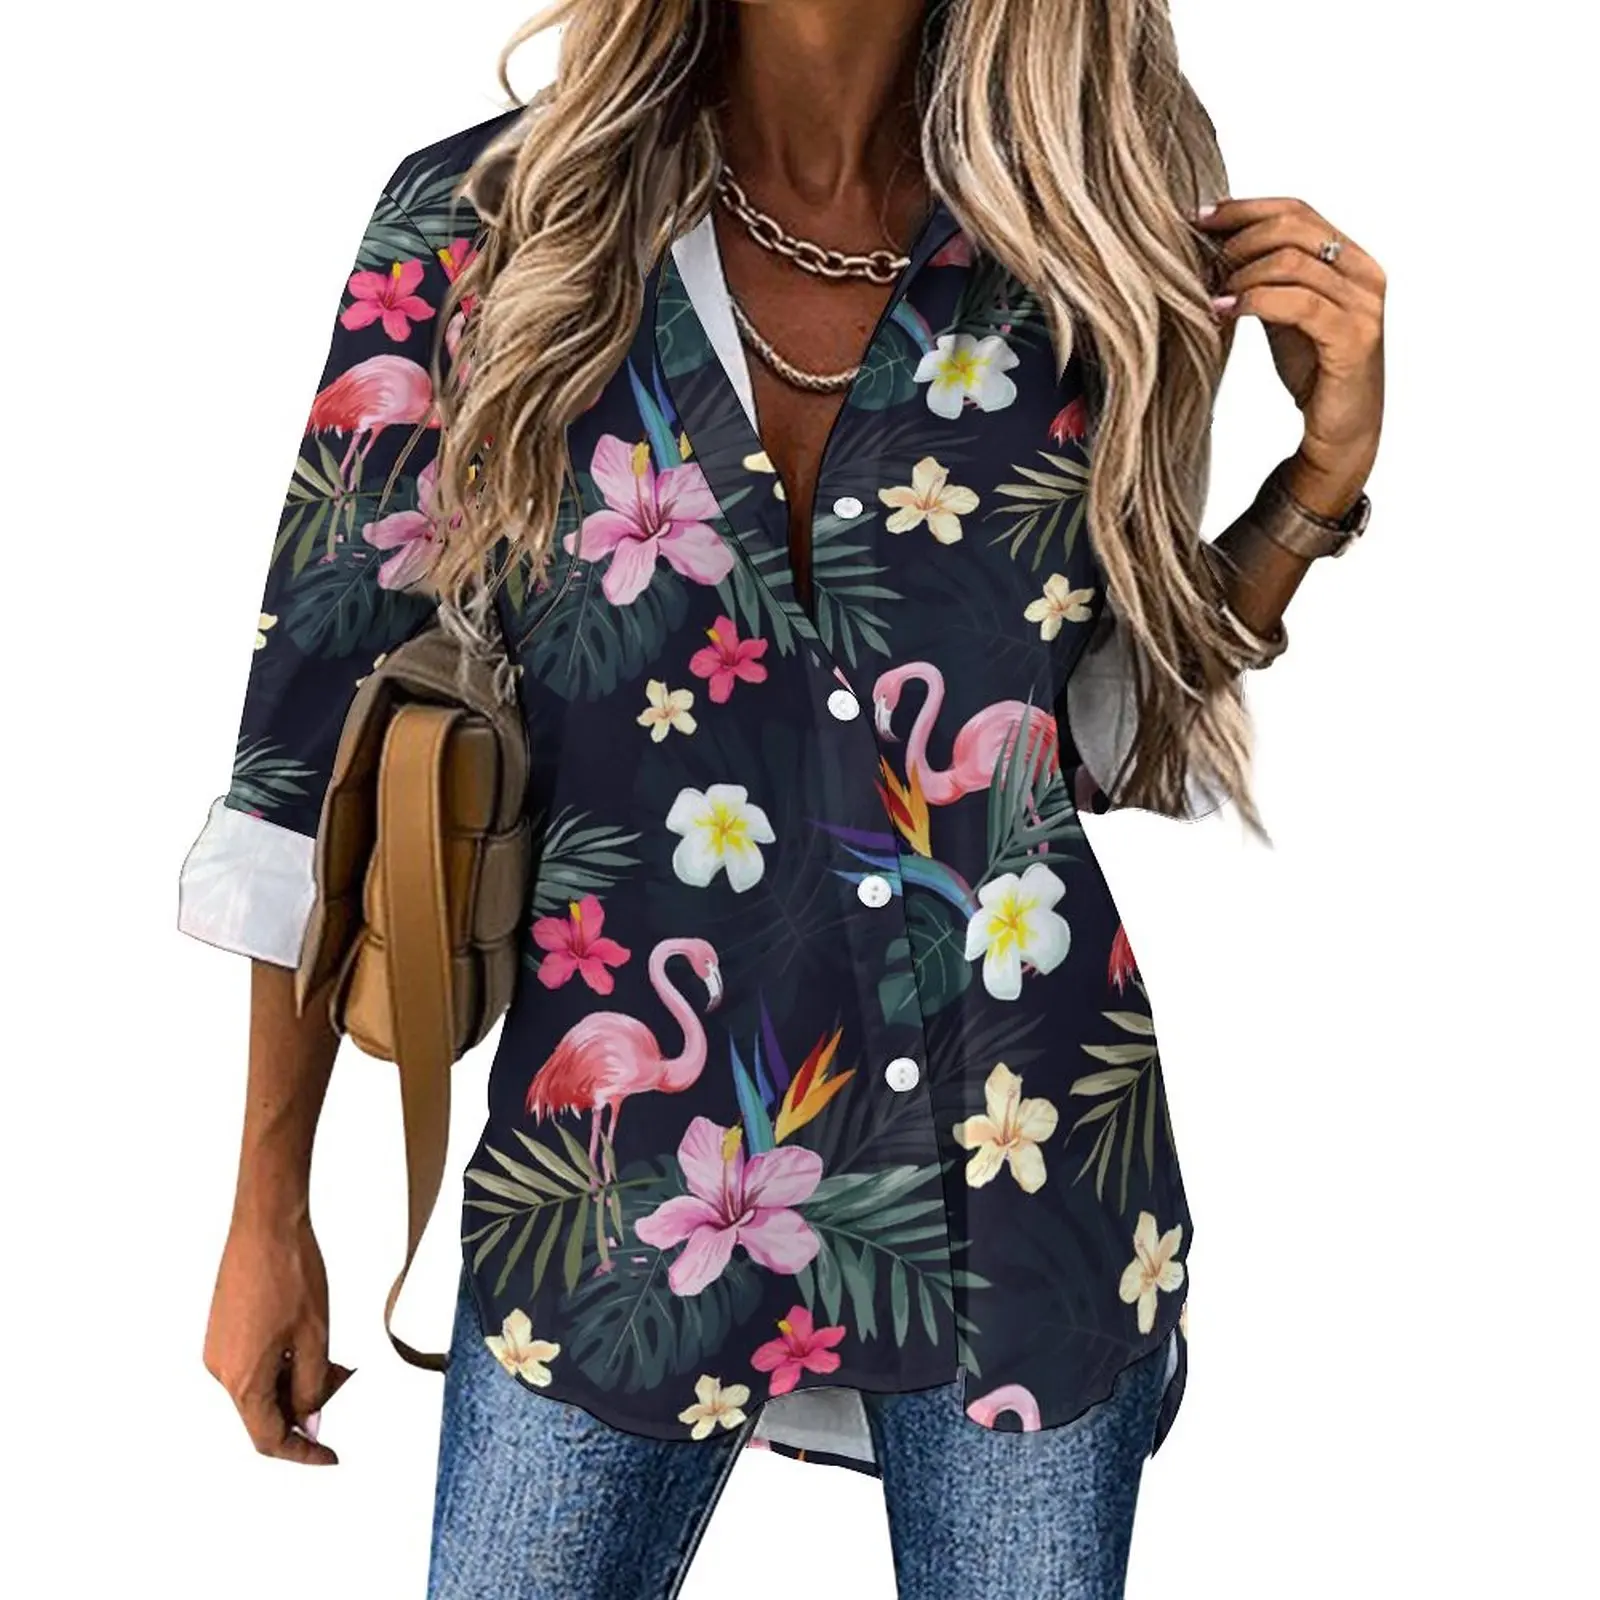 

Повседневная Блузка с тропическими птицами, крутые пользовательские блузки с принтом фламинго, женская уличная одежда с длинным рукавом, рубашки, Осенний Топ большого размера